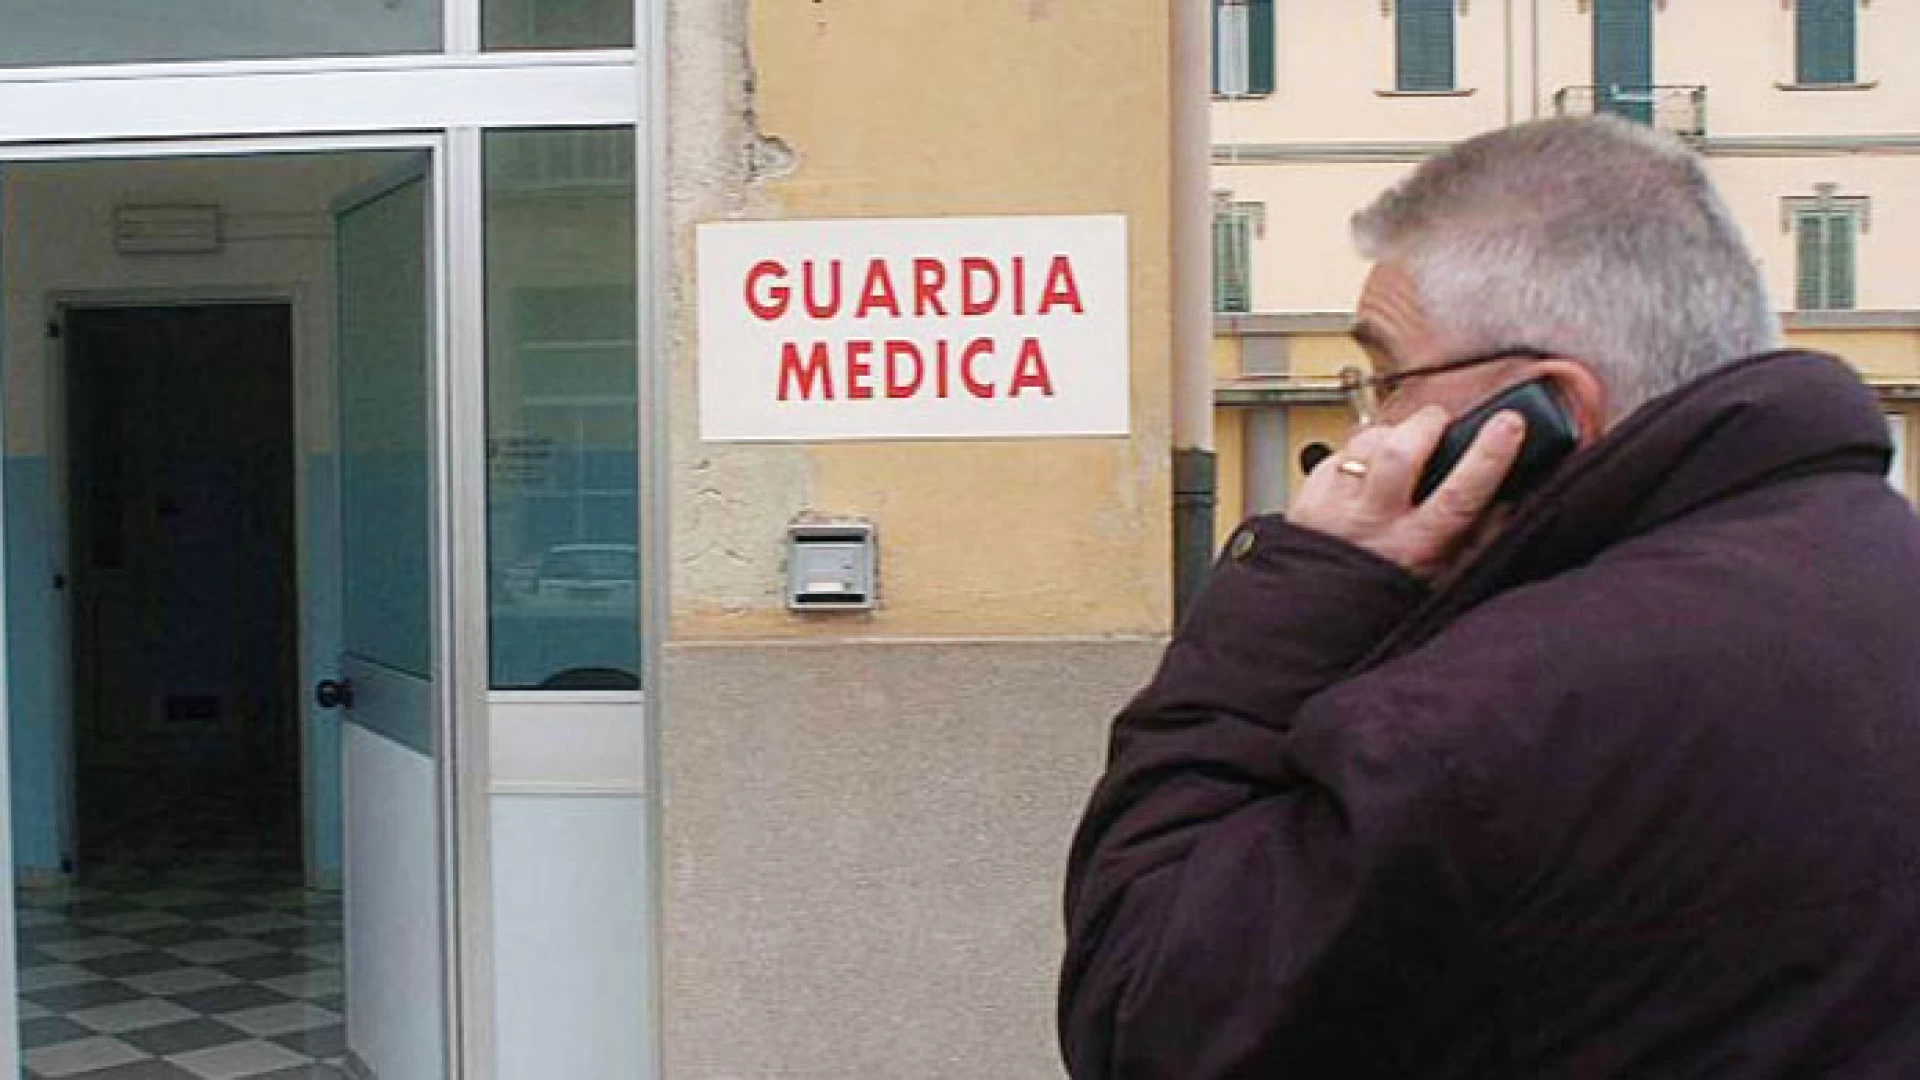 Il sindacato medici italiani lancia un appello per evitare lo smantellamento dell'assistenza sanitaria notturna.